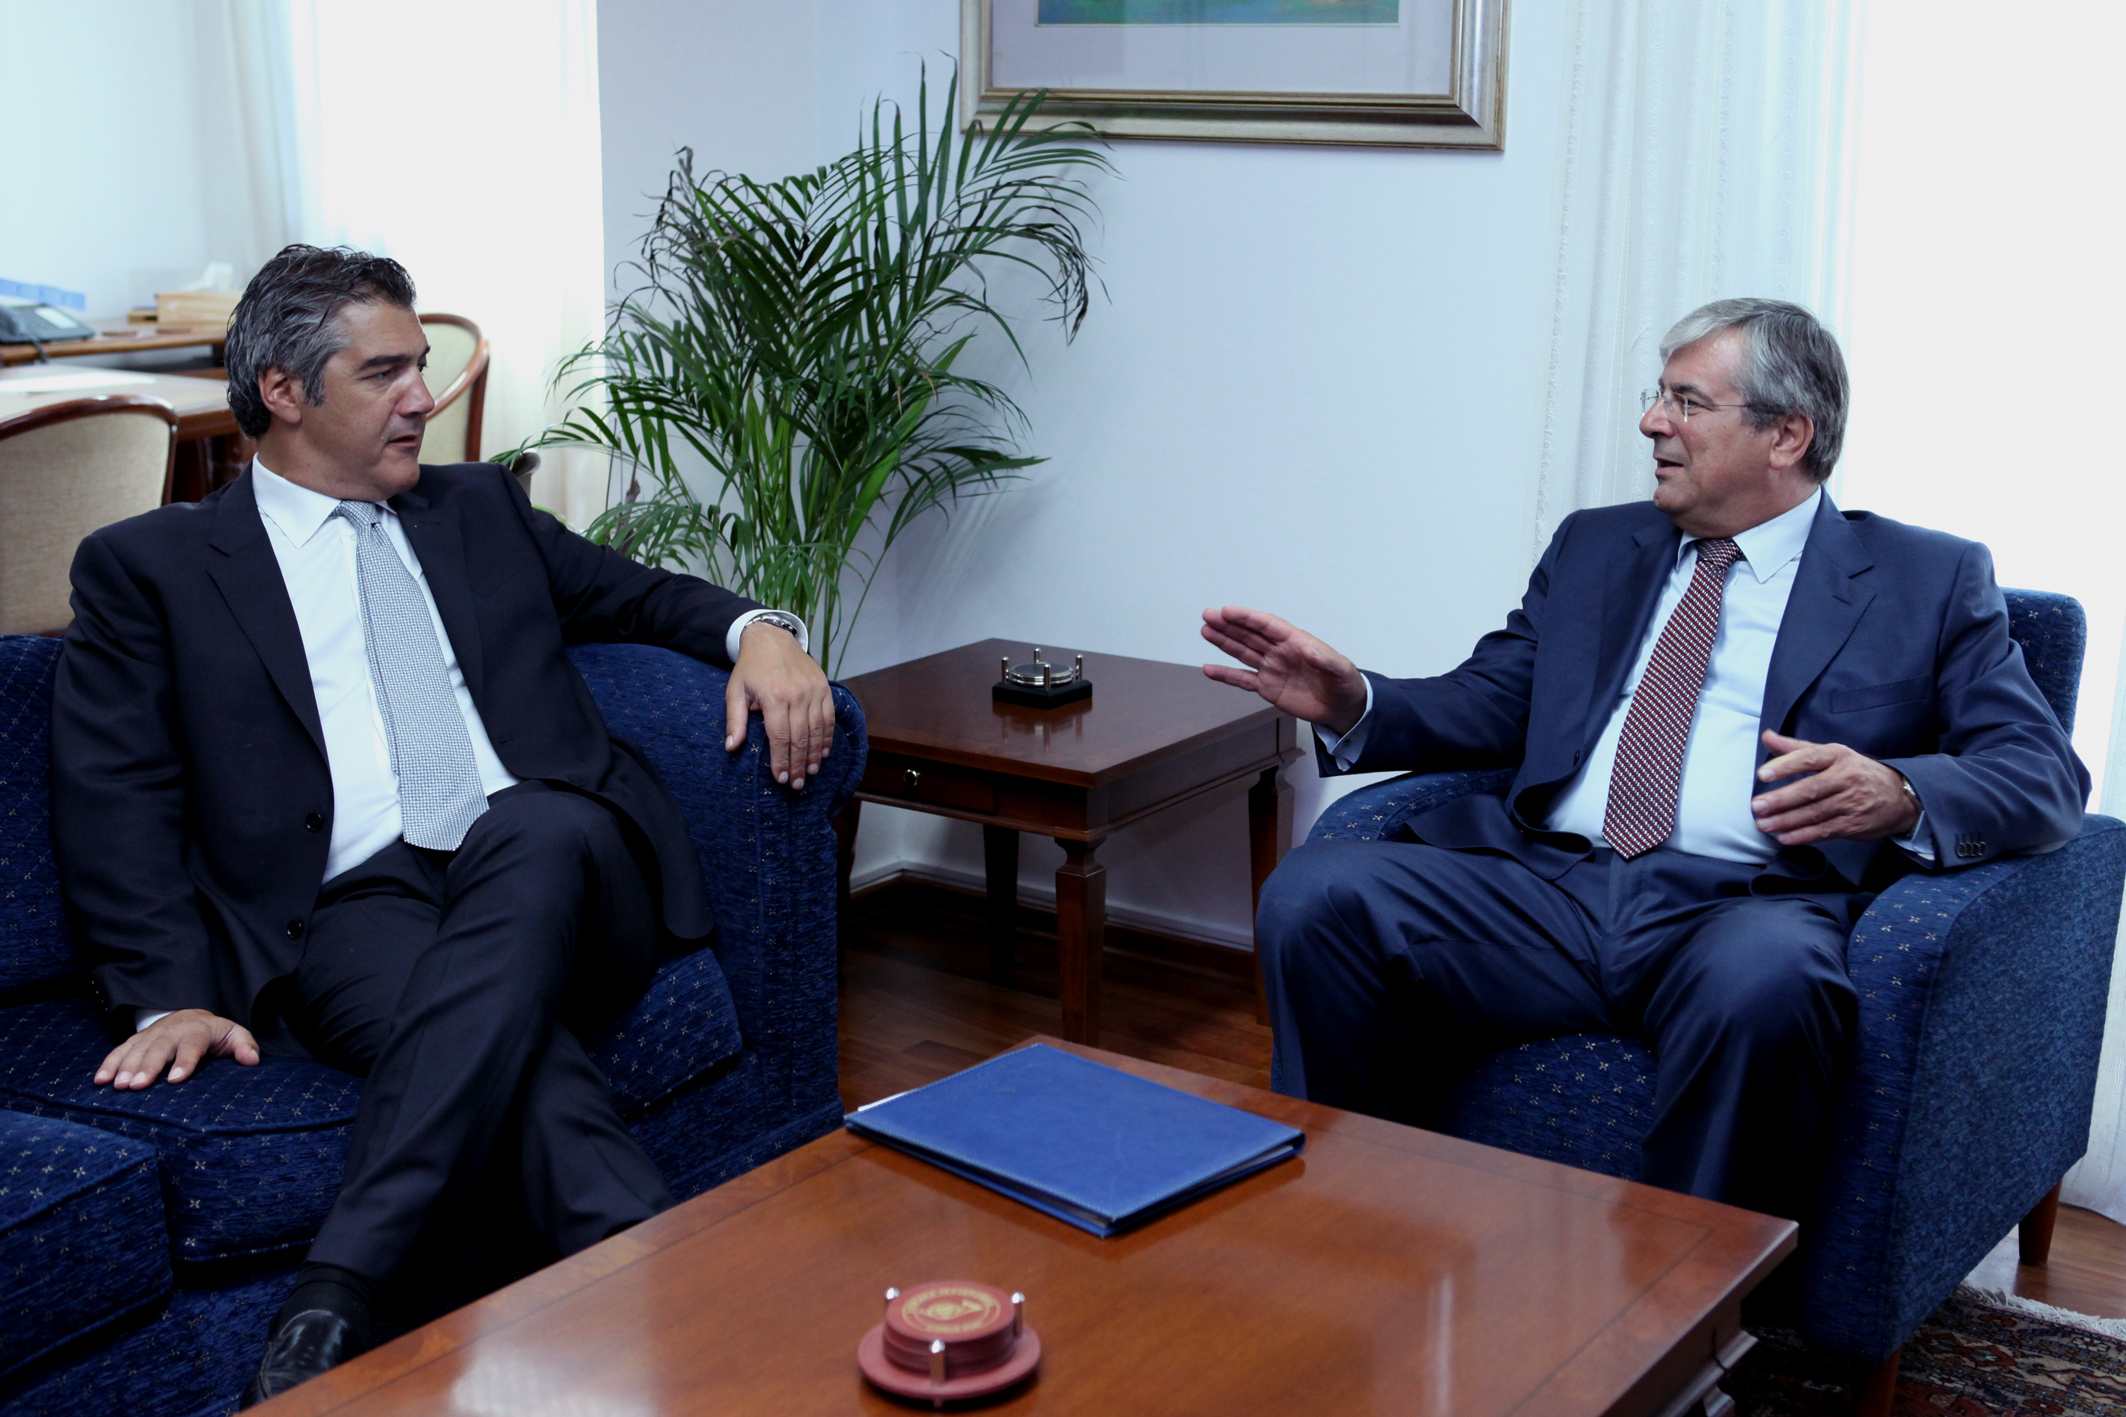 Ο Υπουργός Συγκοινωνιών και Έργων κ. Ευθύμιος Φλουρέντζου σε συνάντηση με τον Υπουργό Ναυτιλίας και Αιγαίου της Ελλάδας κ. Κωνσταντίνο Μουσουρούλη.